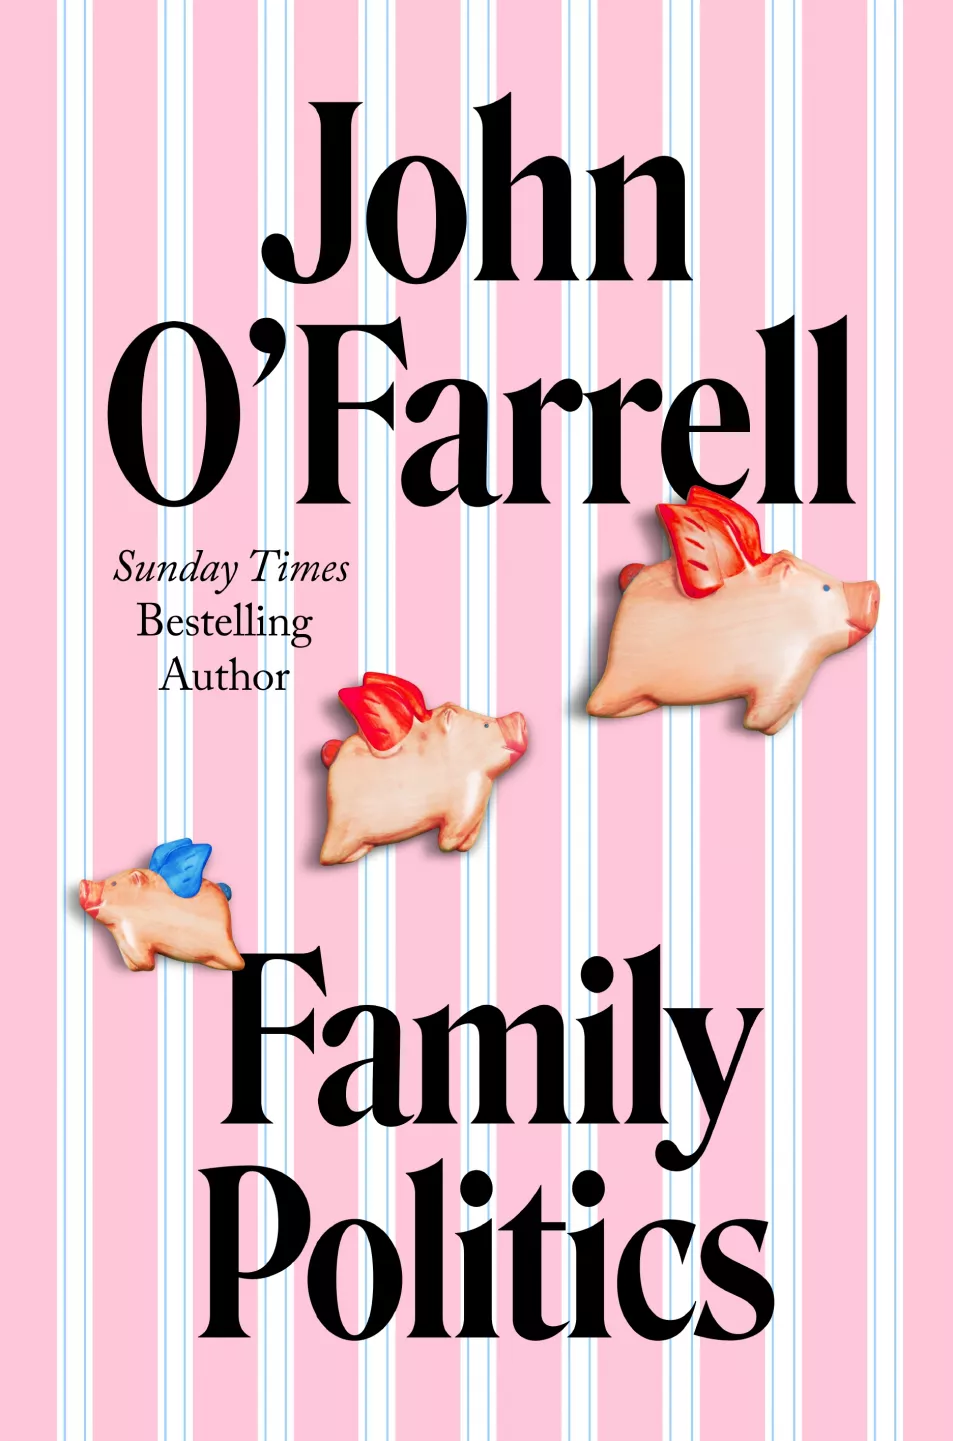 Family Politics by John O’Farrell